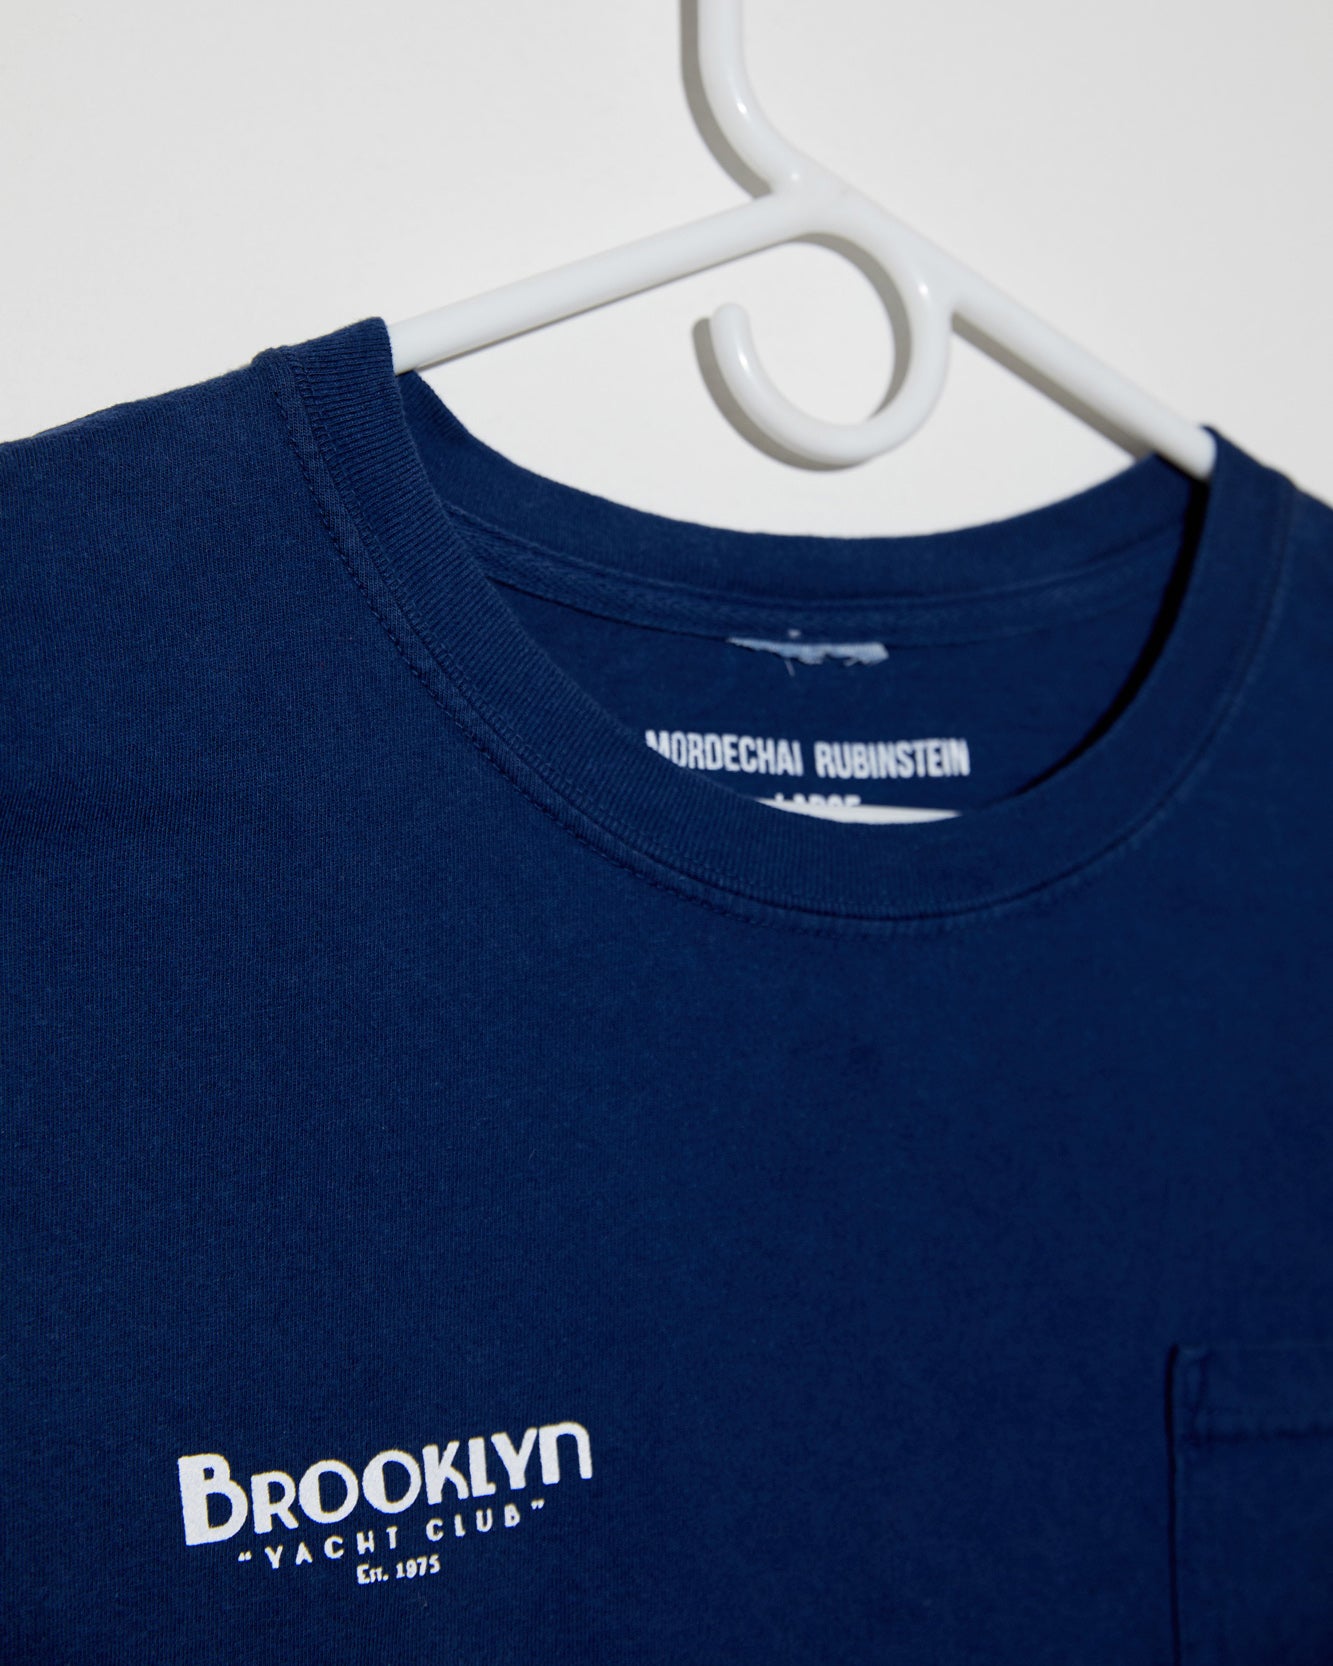 Brooklyn Yacht Club — Brooklyn Yacht Club GPS tee - Blue Fade